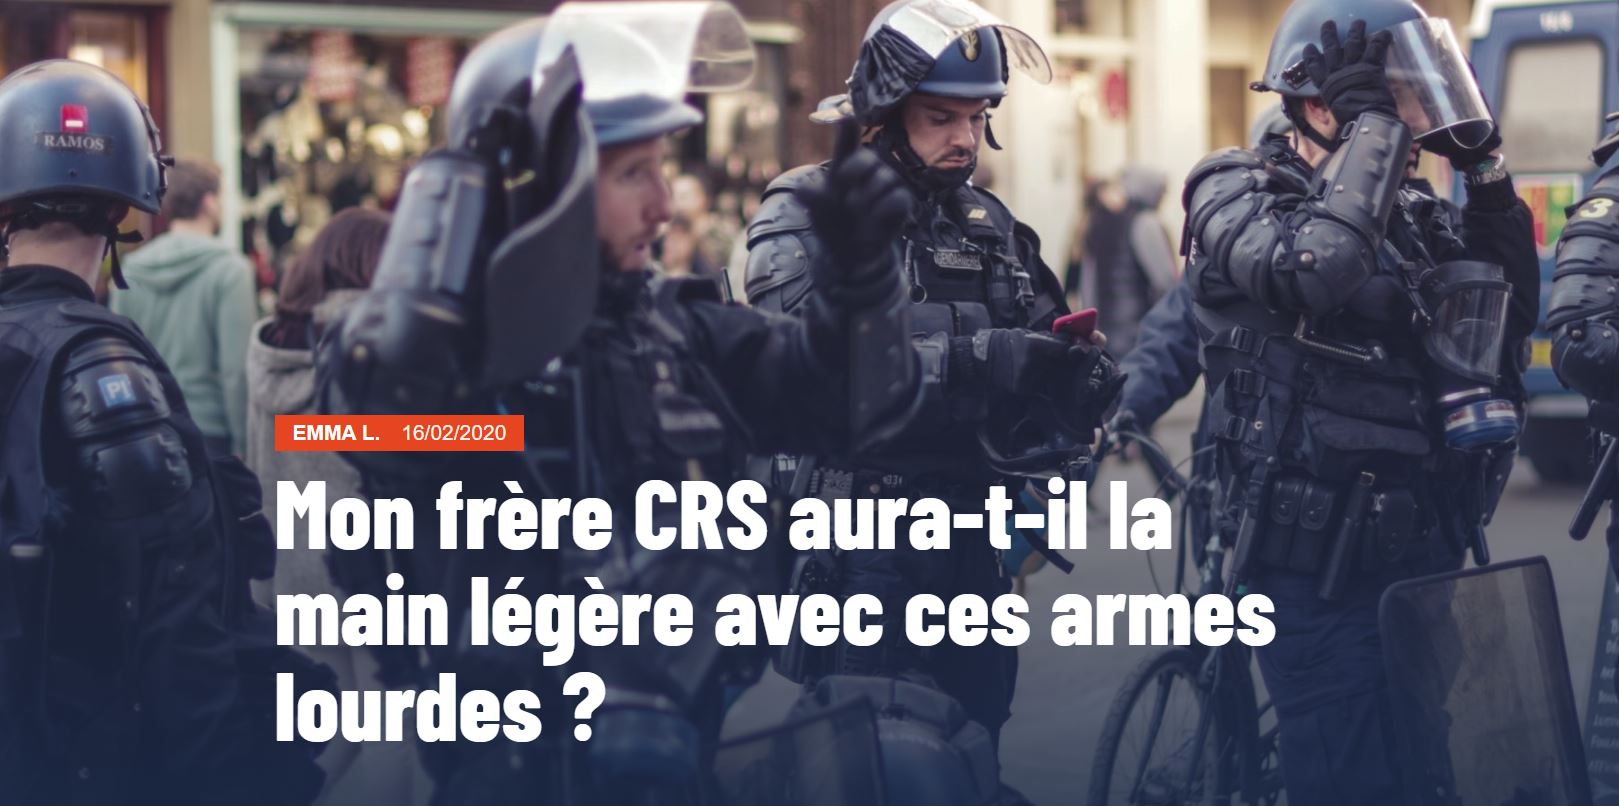 Capture d'écran de l'article "Mon frère CRS aura-t-il la main légère avec ces armes lourdes ?"